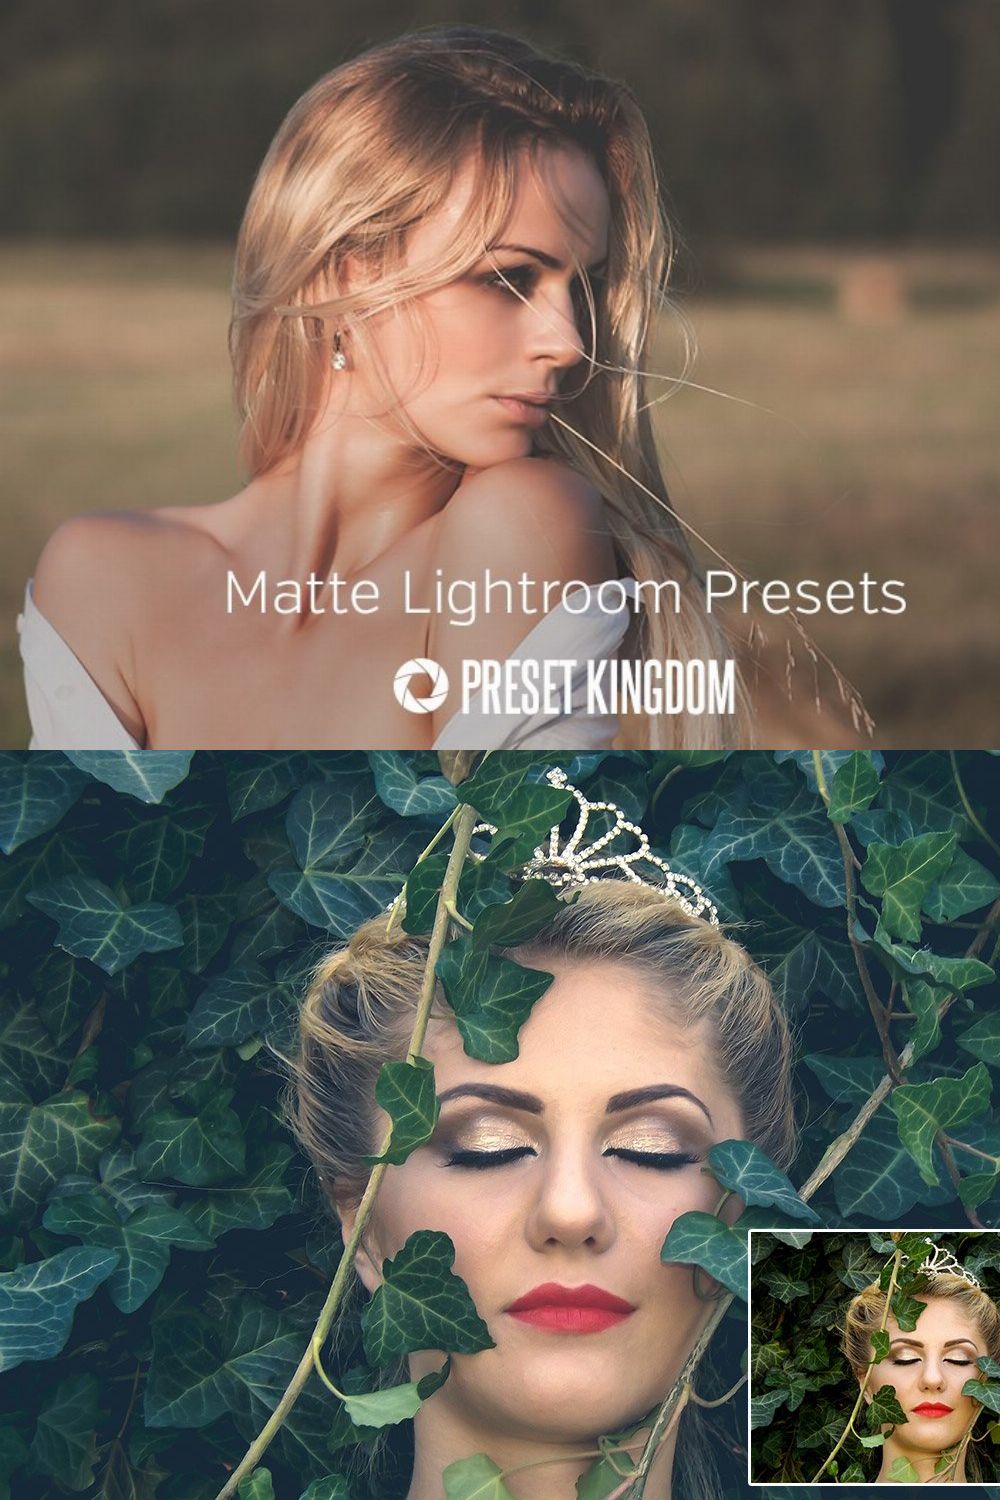 Matte Lightroom Presets pinterest preview image.